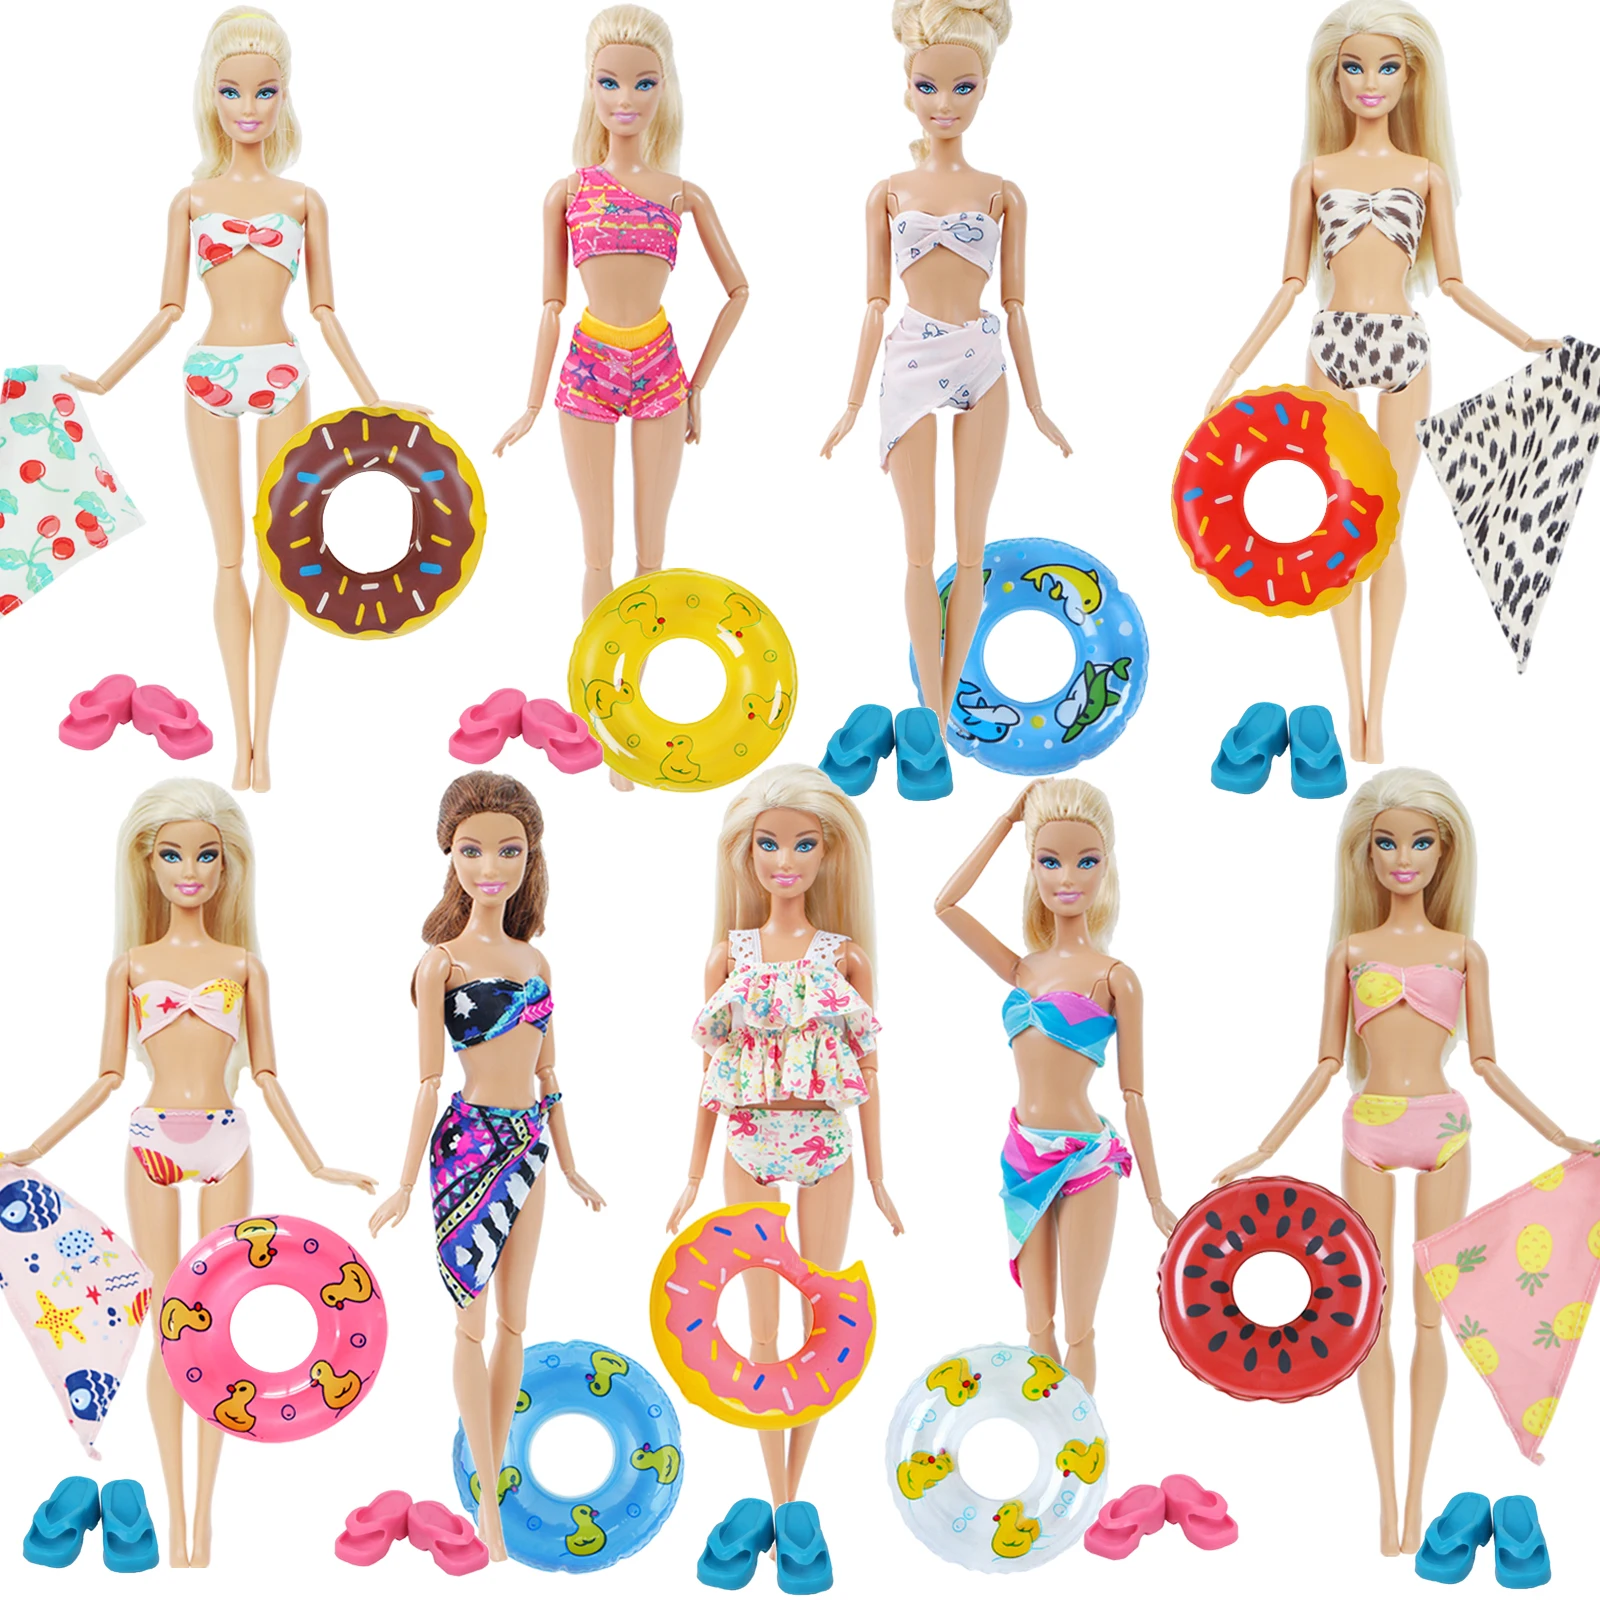 1х купальники для кукол пляжная купальная одежда прелестное бикини купальник + случайный 1х плавучий буй спасательный пояс кольцо для Барби